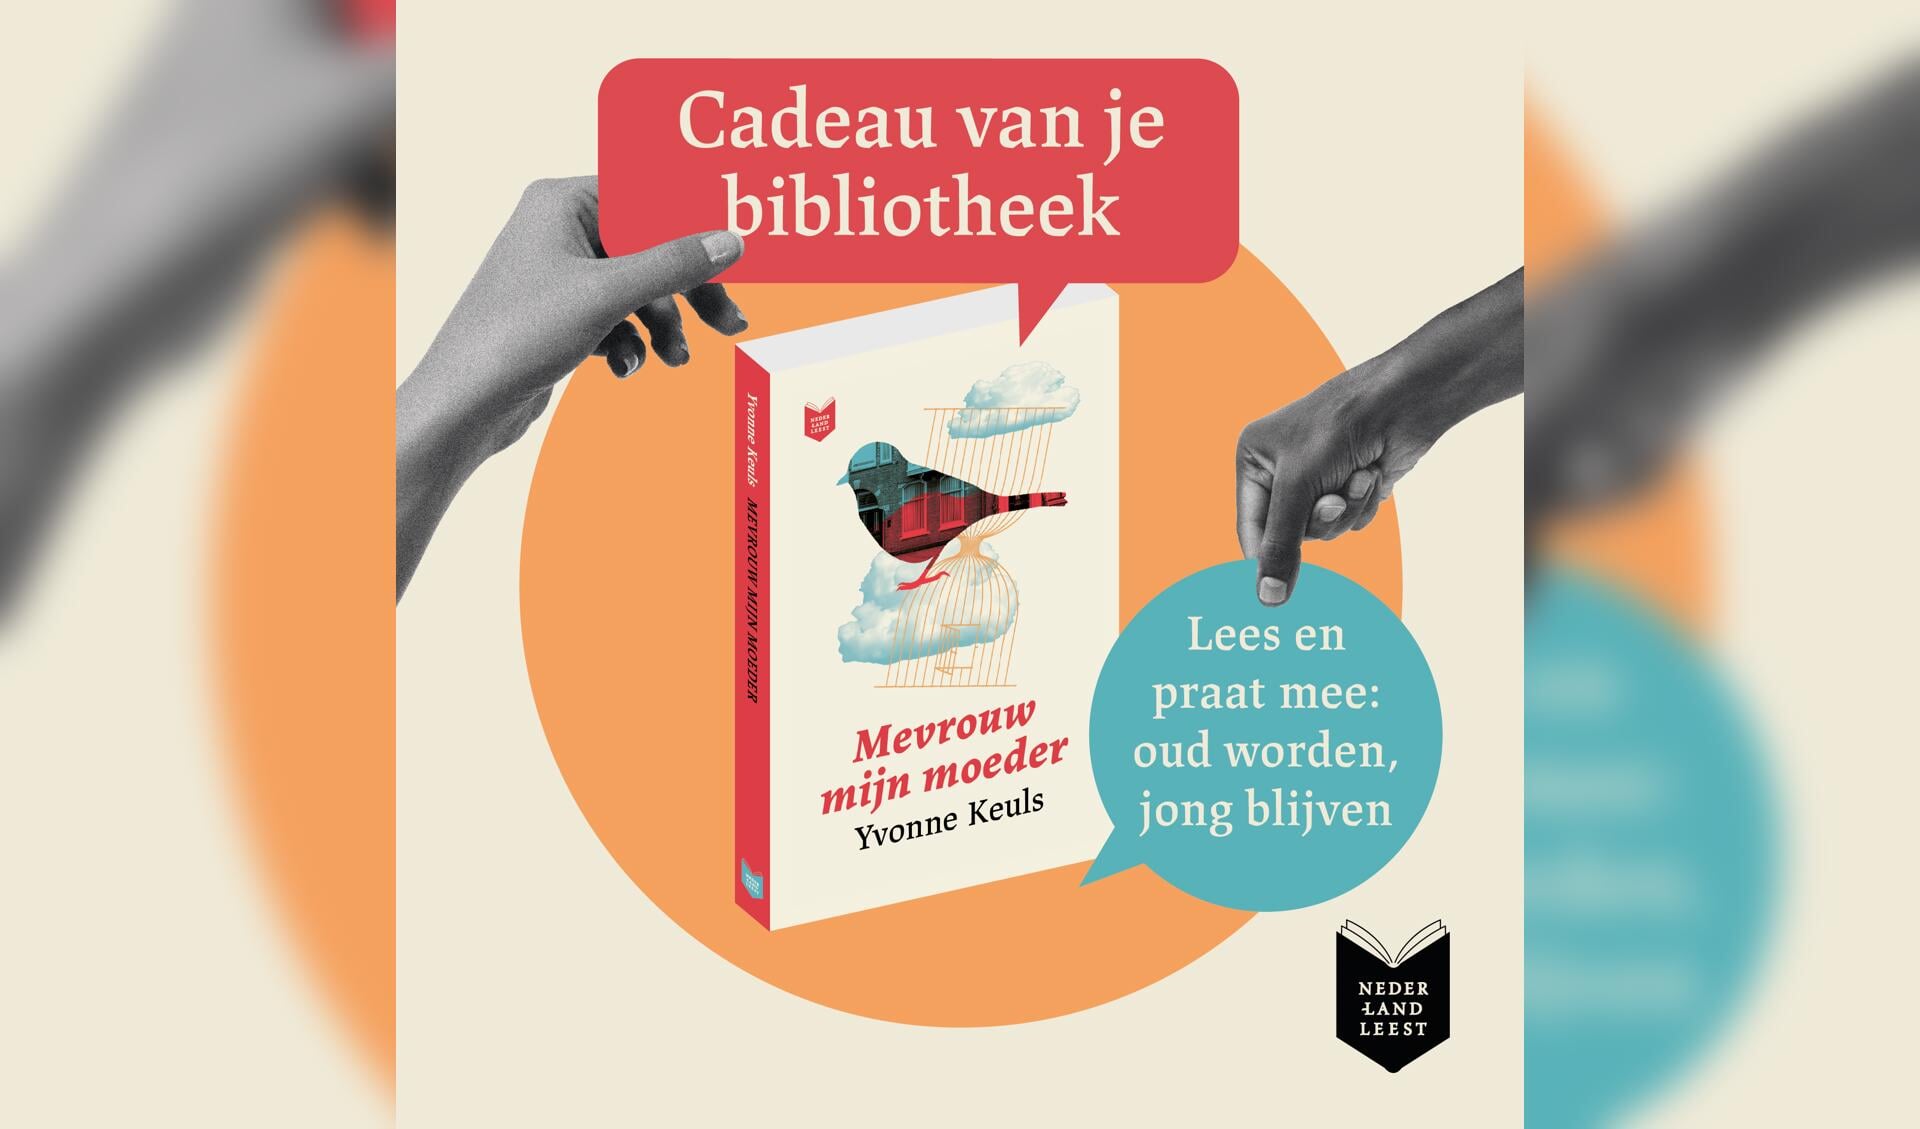 Berg Vesuvius Puur bed Nederland Leest in Bibliotheek Amstelland: boek cadeau -  amstelveensnieuwsblad.nl Nieuws uit de regio Amstelveen